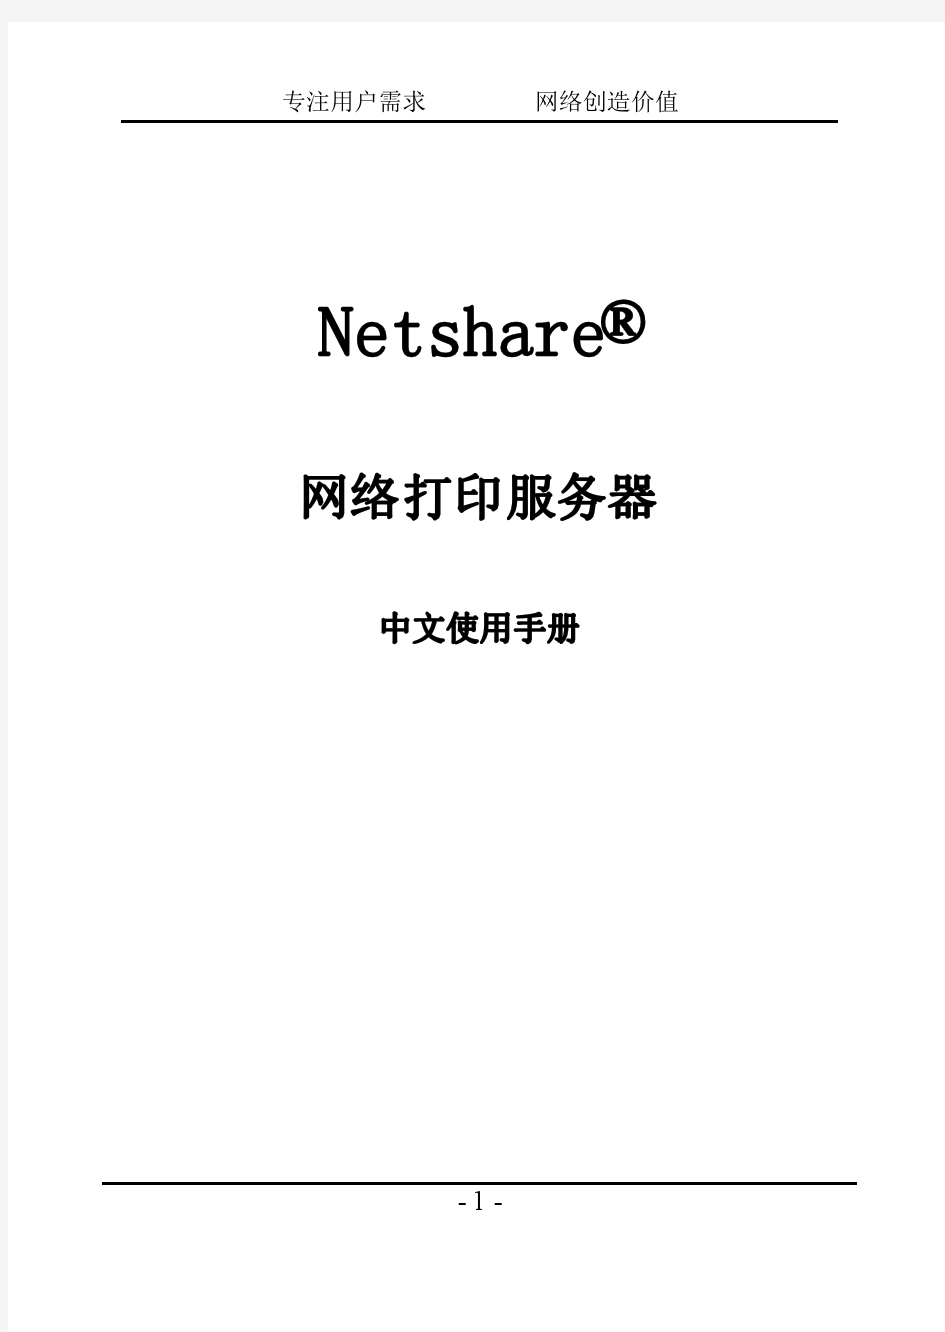 Netshare打印服务器说明书YN202